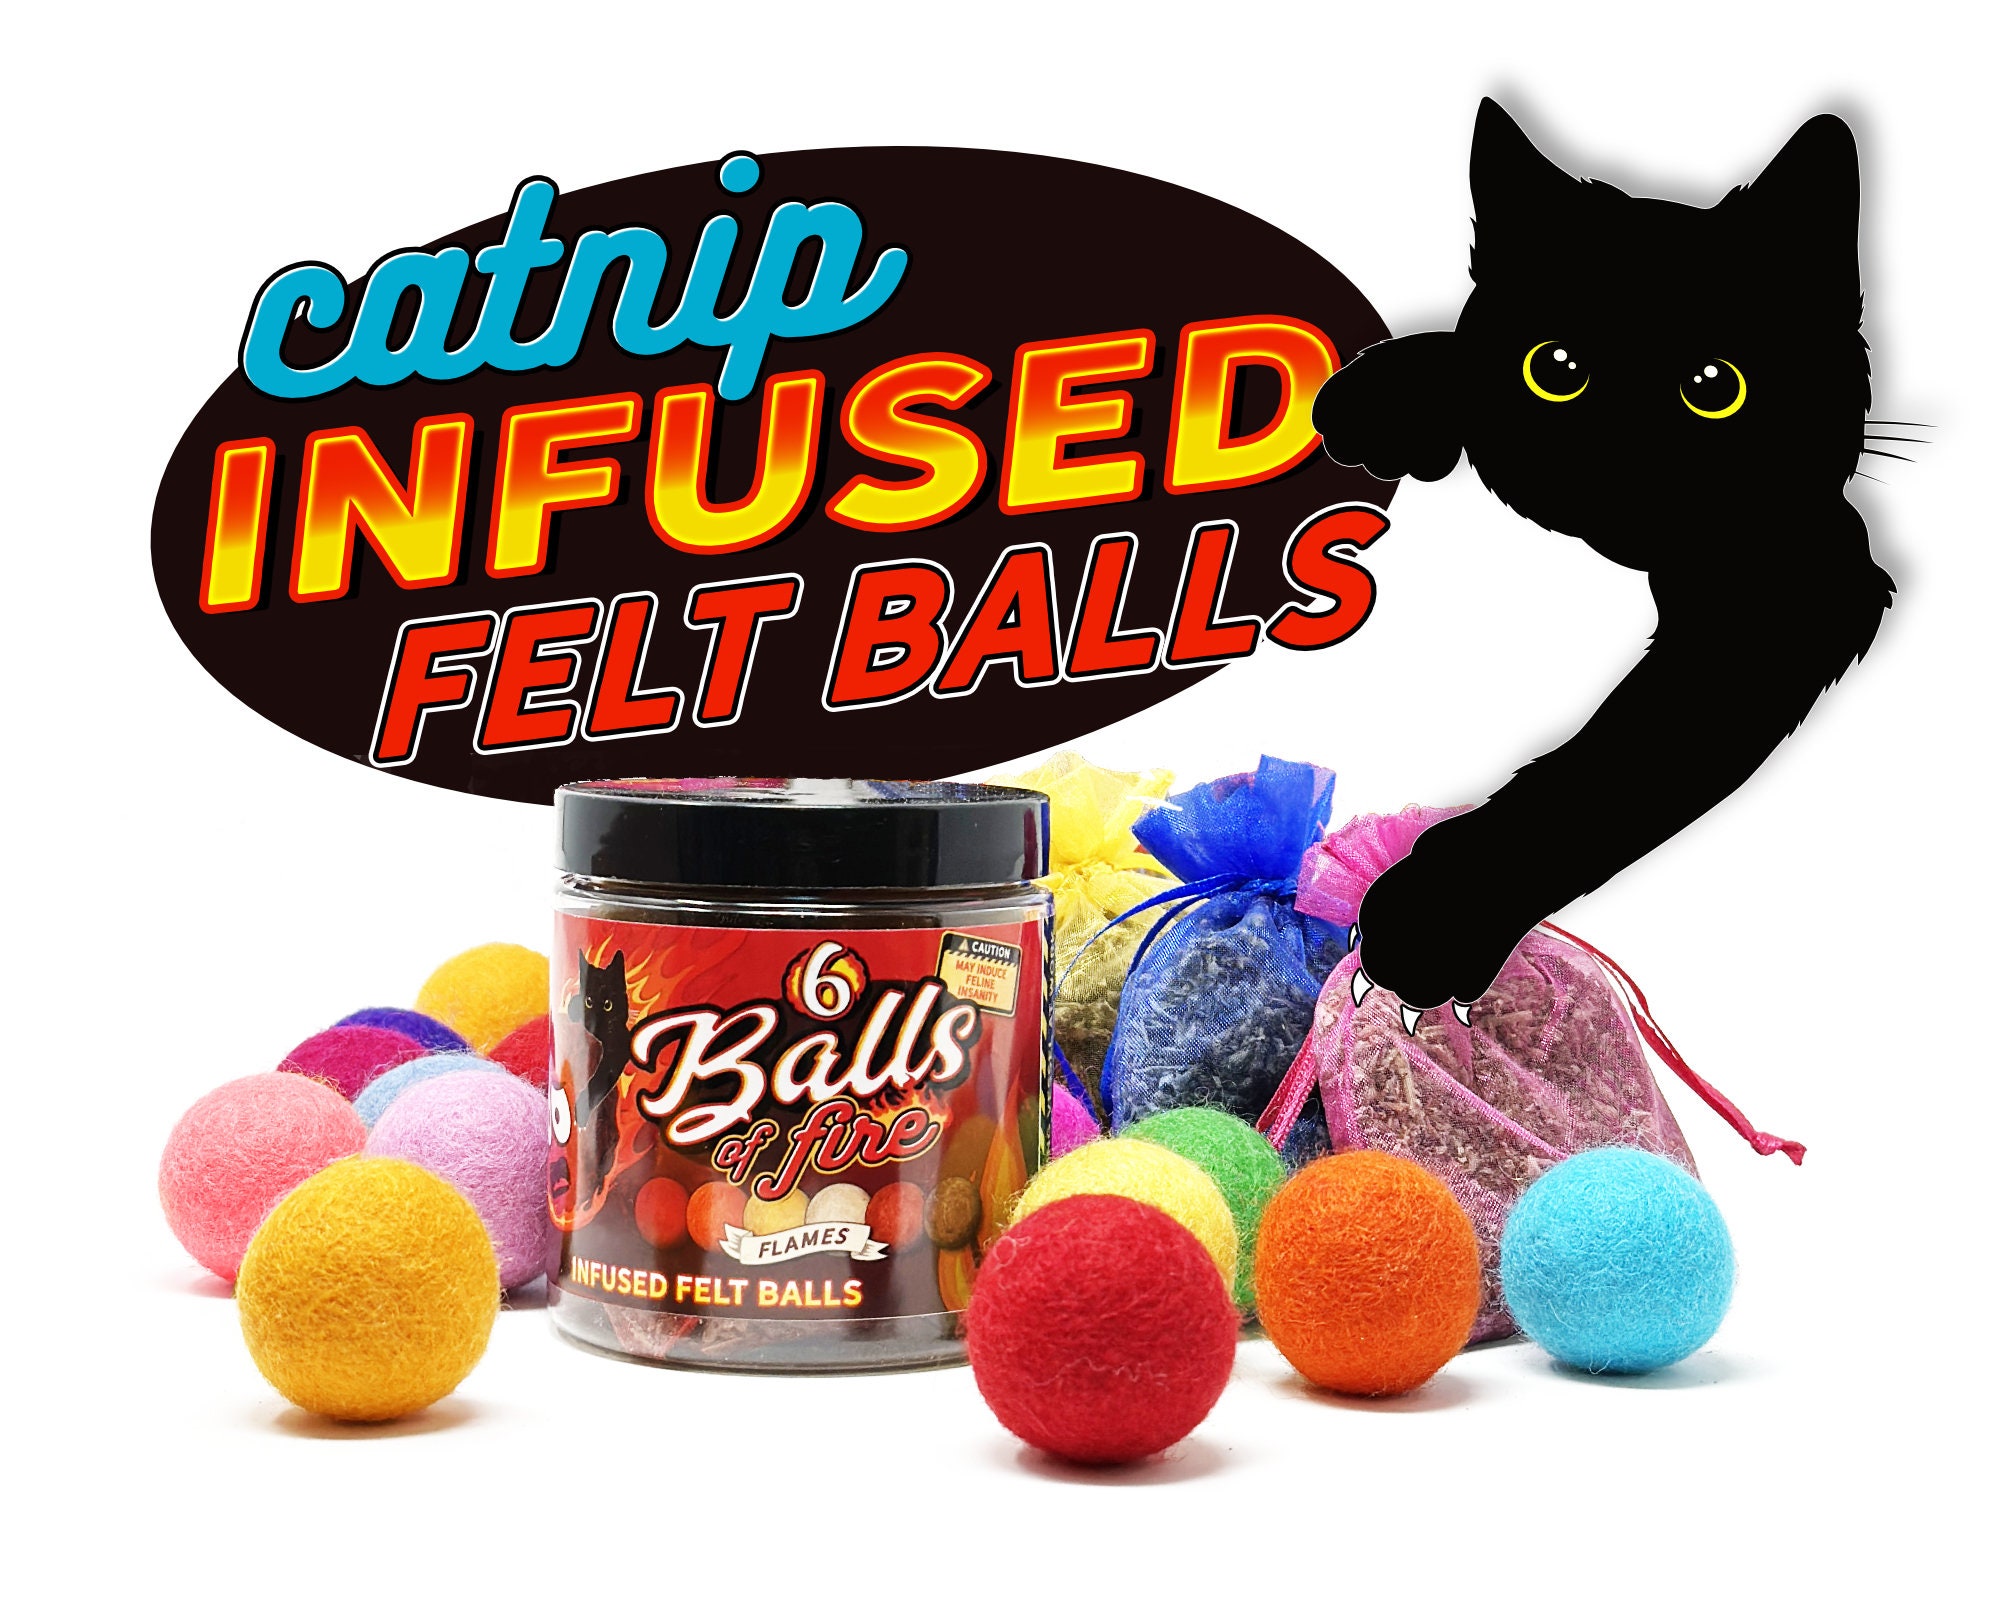 Posh Feline - Cat Toy: Glitter Poms 1.5 - 9 pack